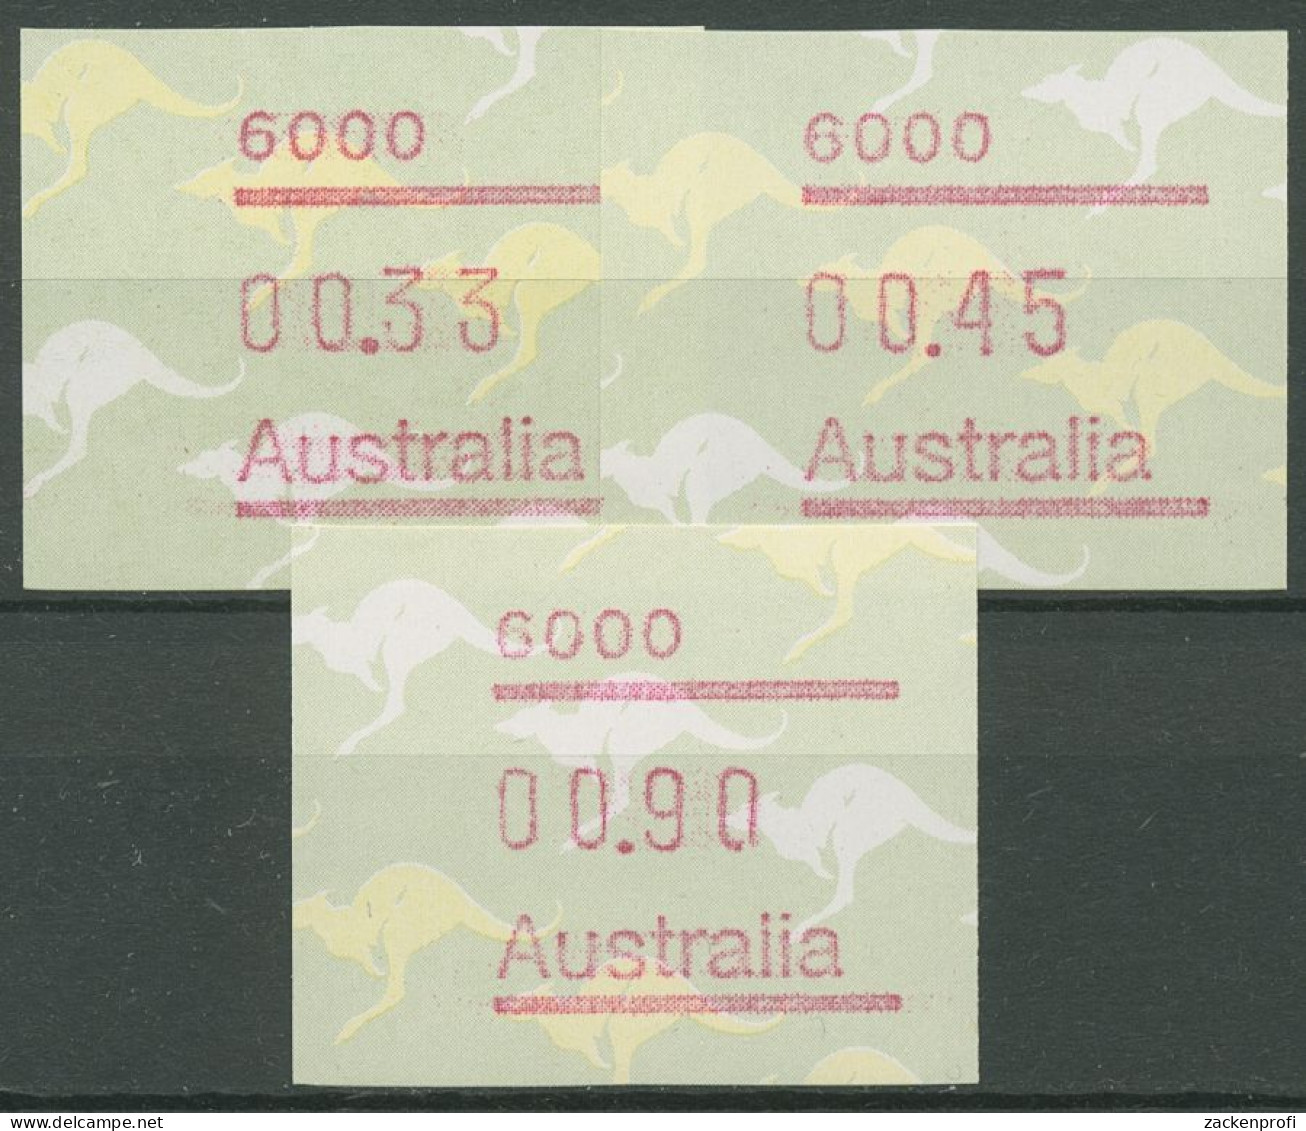 Australien 1985 Känguruh Tastensatz Automatenmarke 4 S1, 6000 Postfrisch - Automatenmarken [ATM]